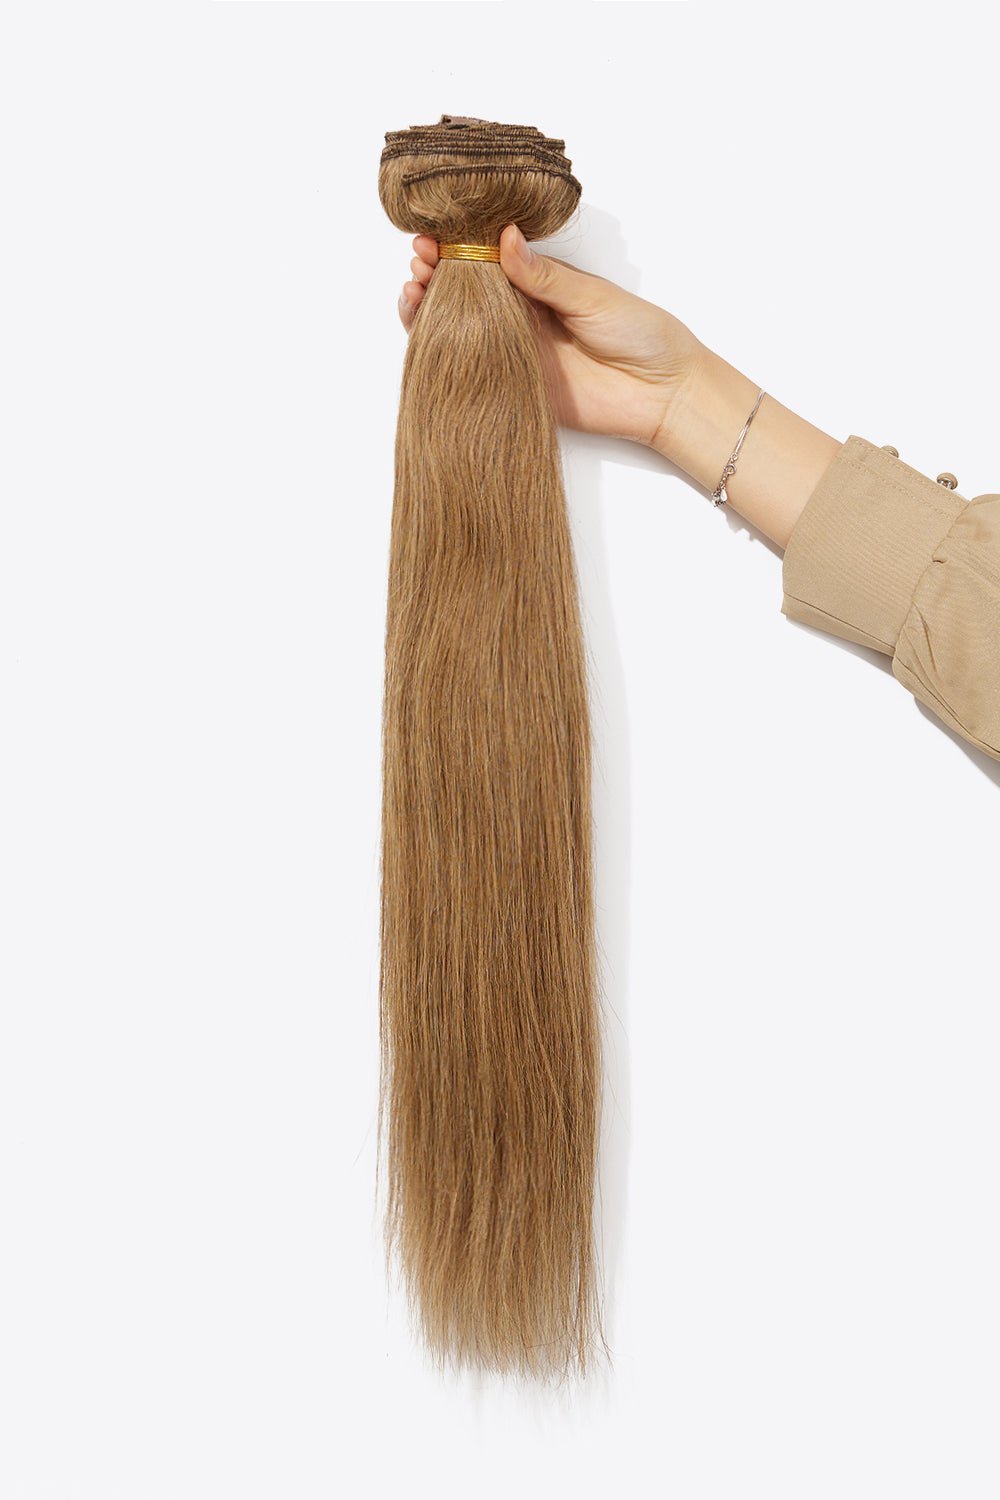 16'' 140g #10 Clip-in Hair Extensions Human Virgin Hair - Shah S. Sahota